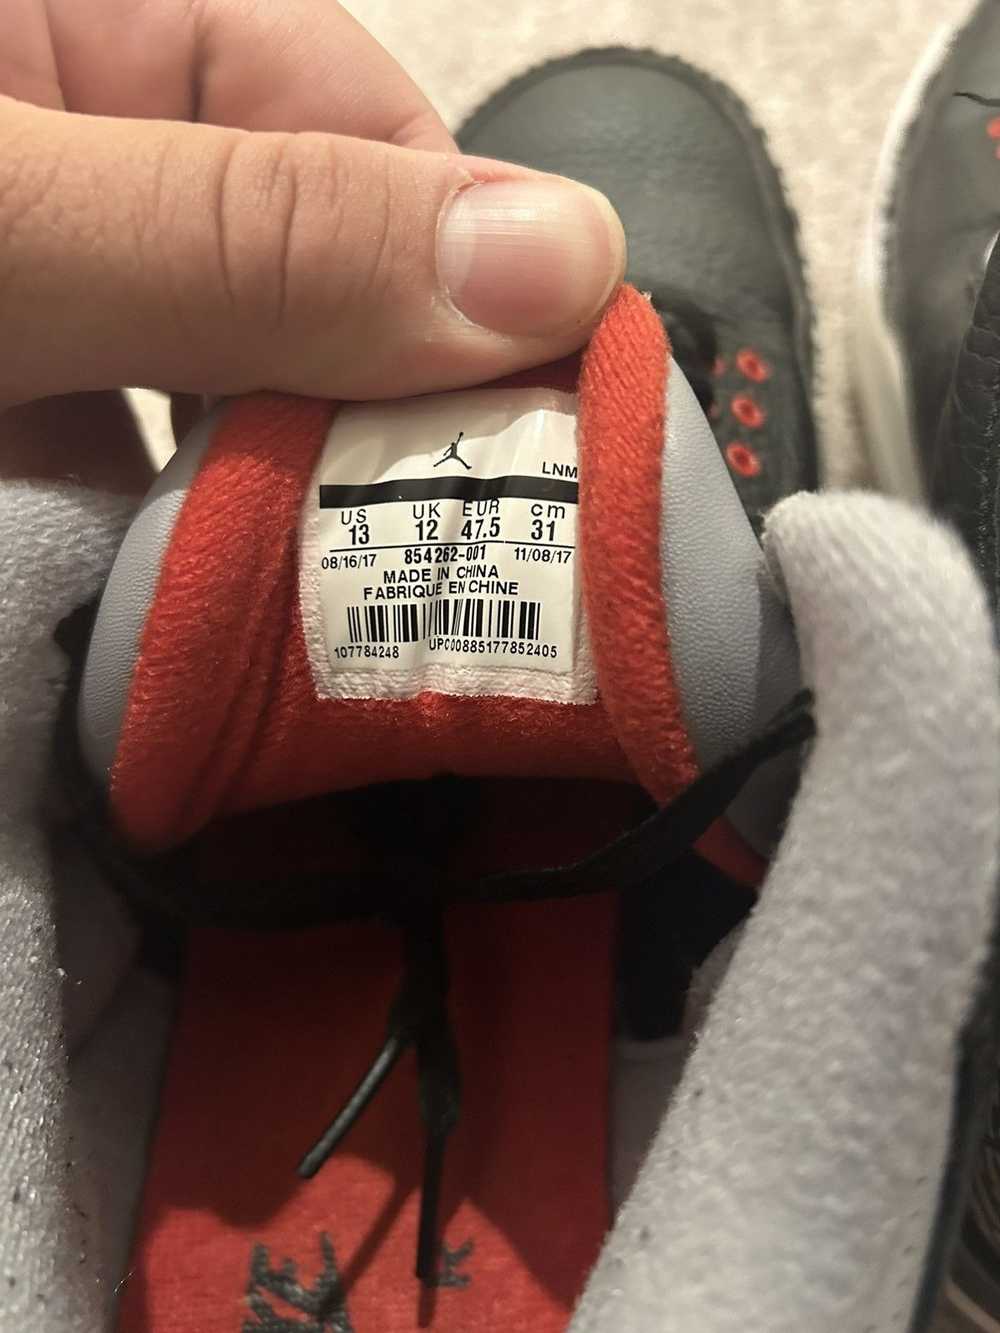 Jordan Brand Nike air Jordan black cement 3s 2018 - image 8